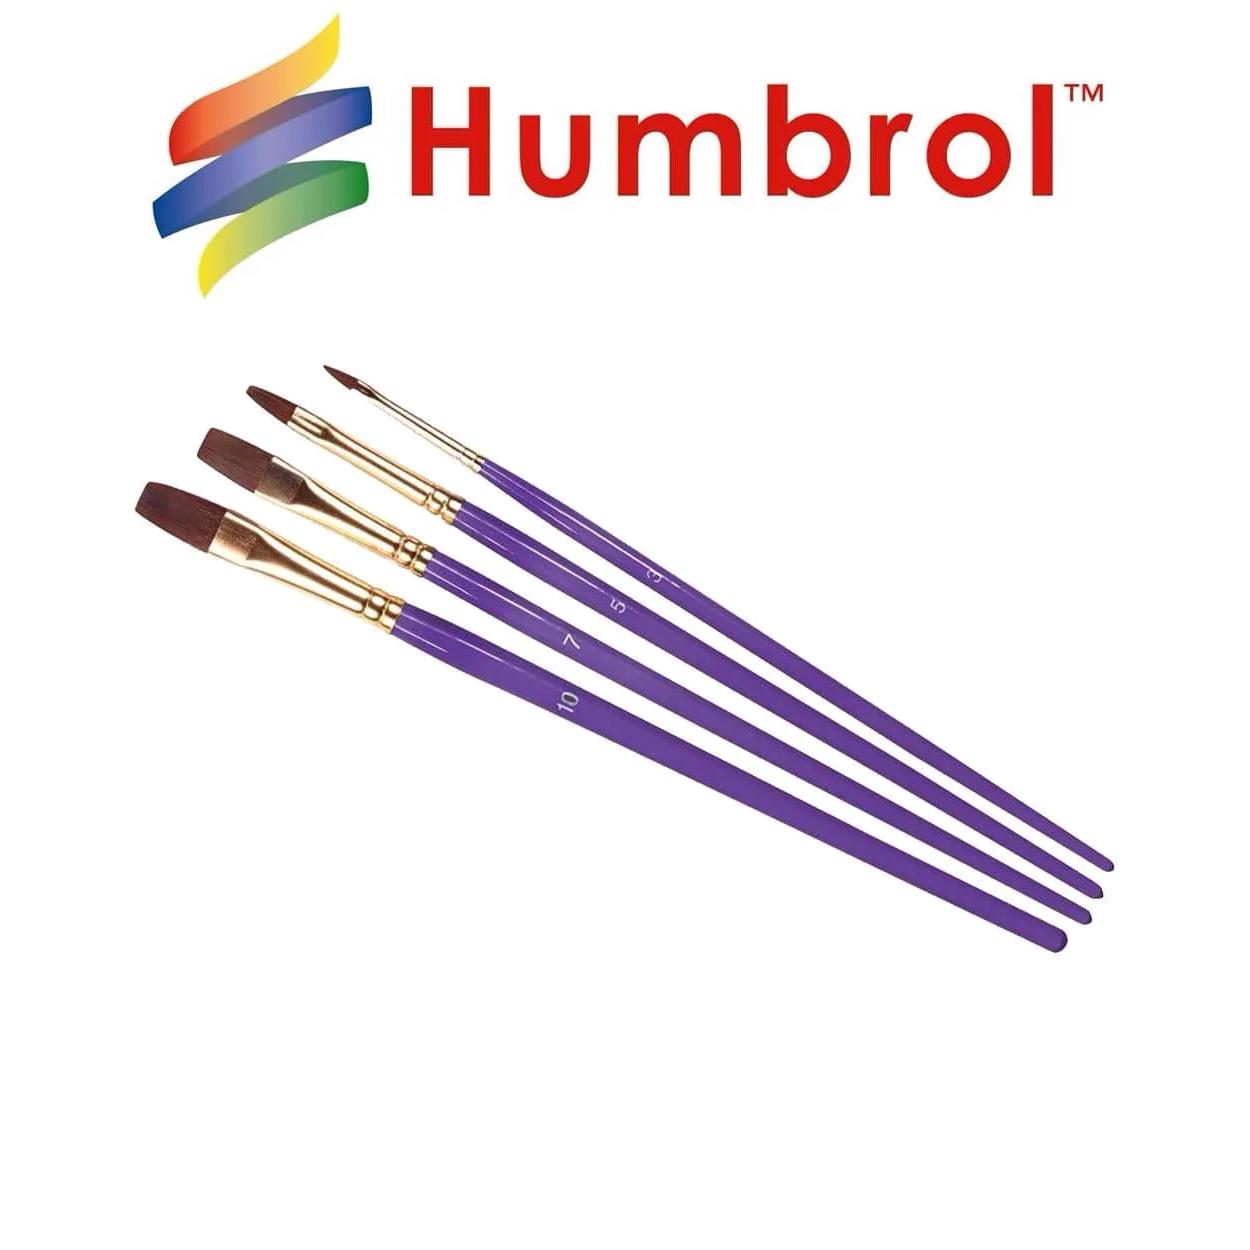 Humbrol Paintbrushes